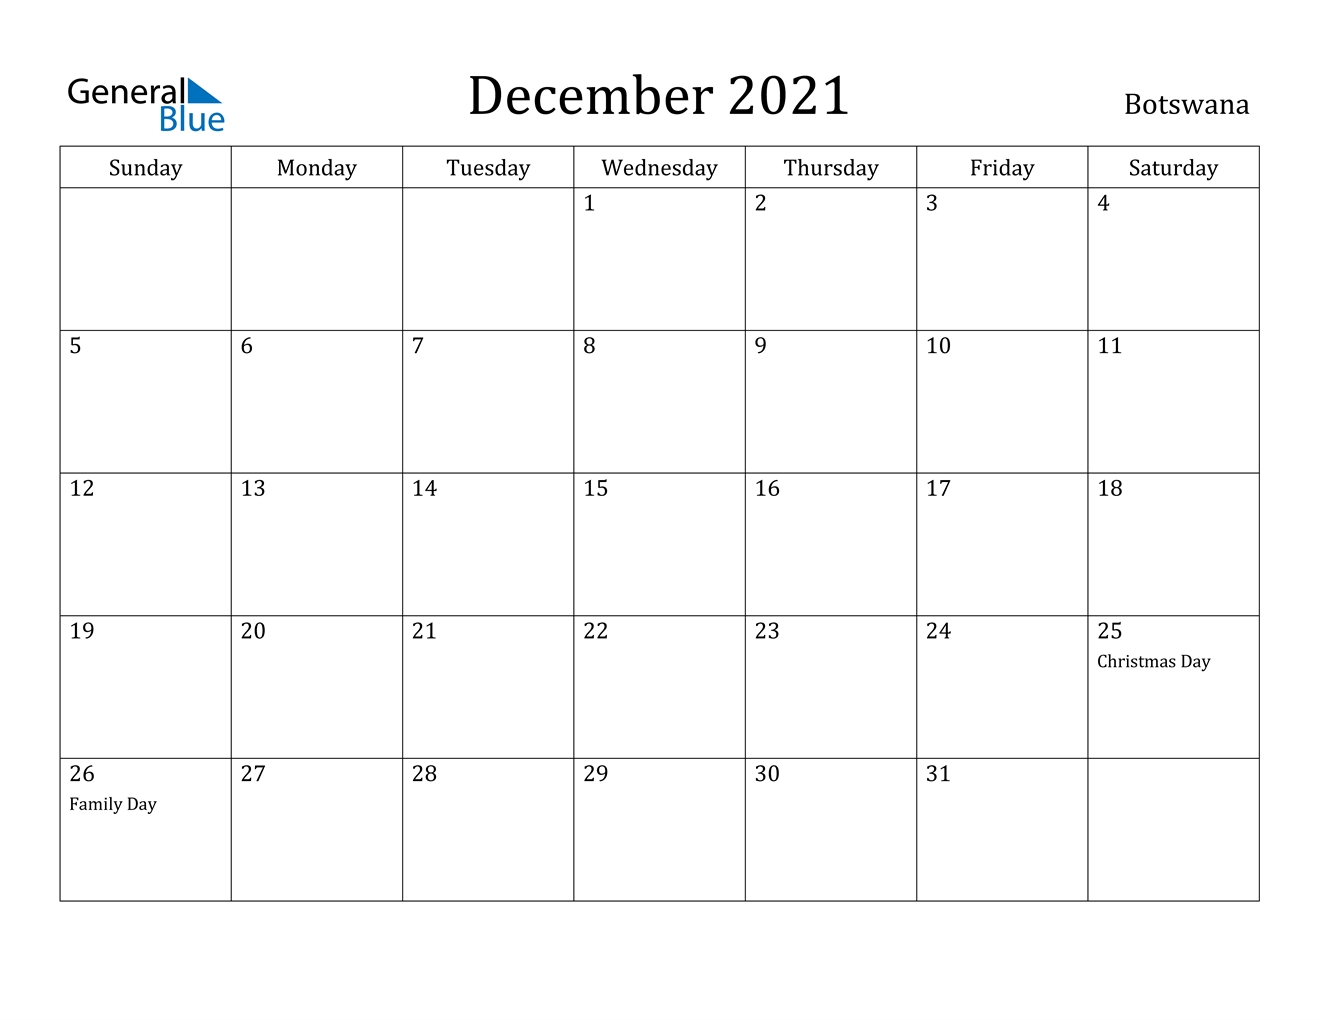 December 2021 Calendar - Botswana Calendar For November And December 2021